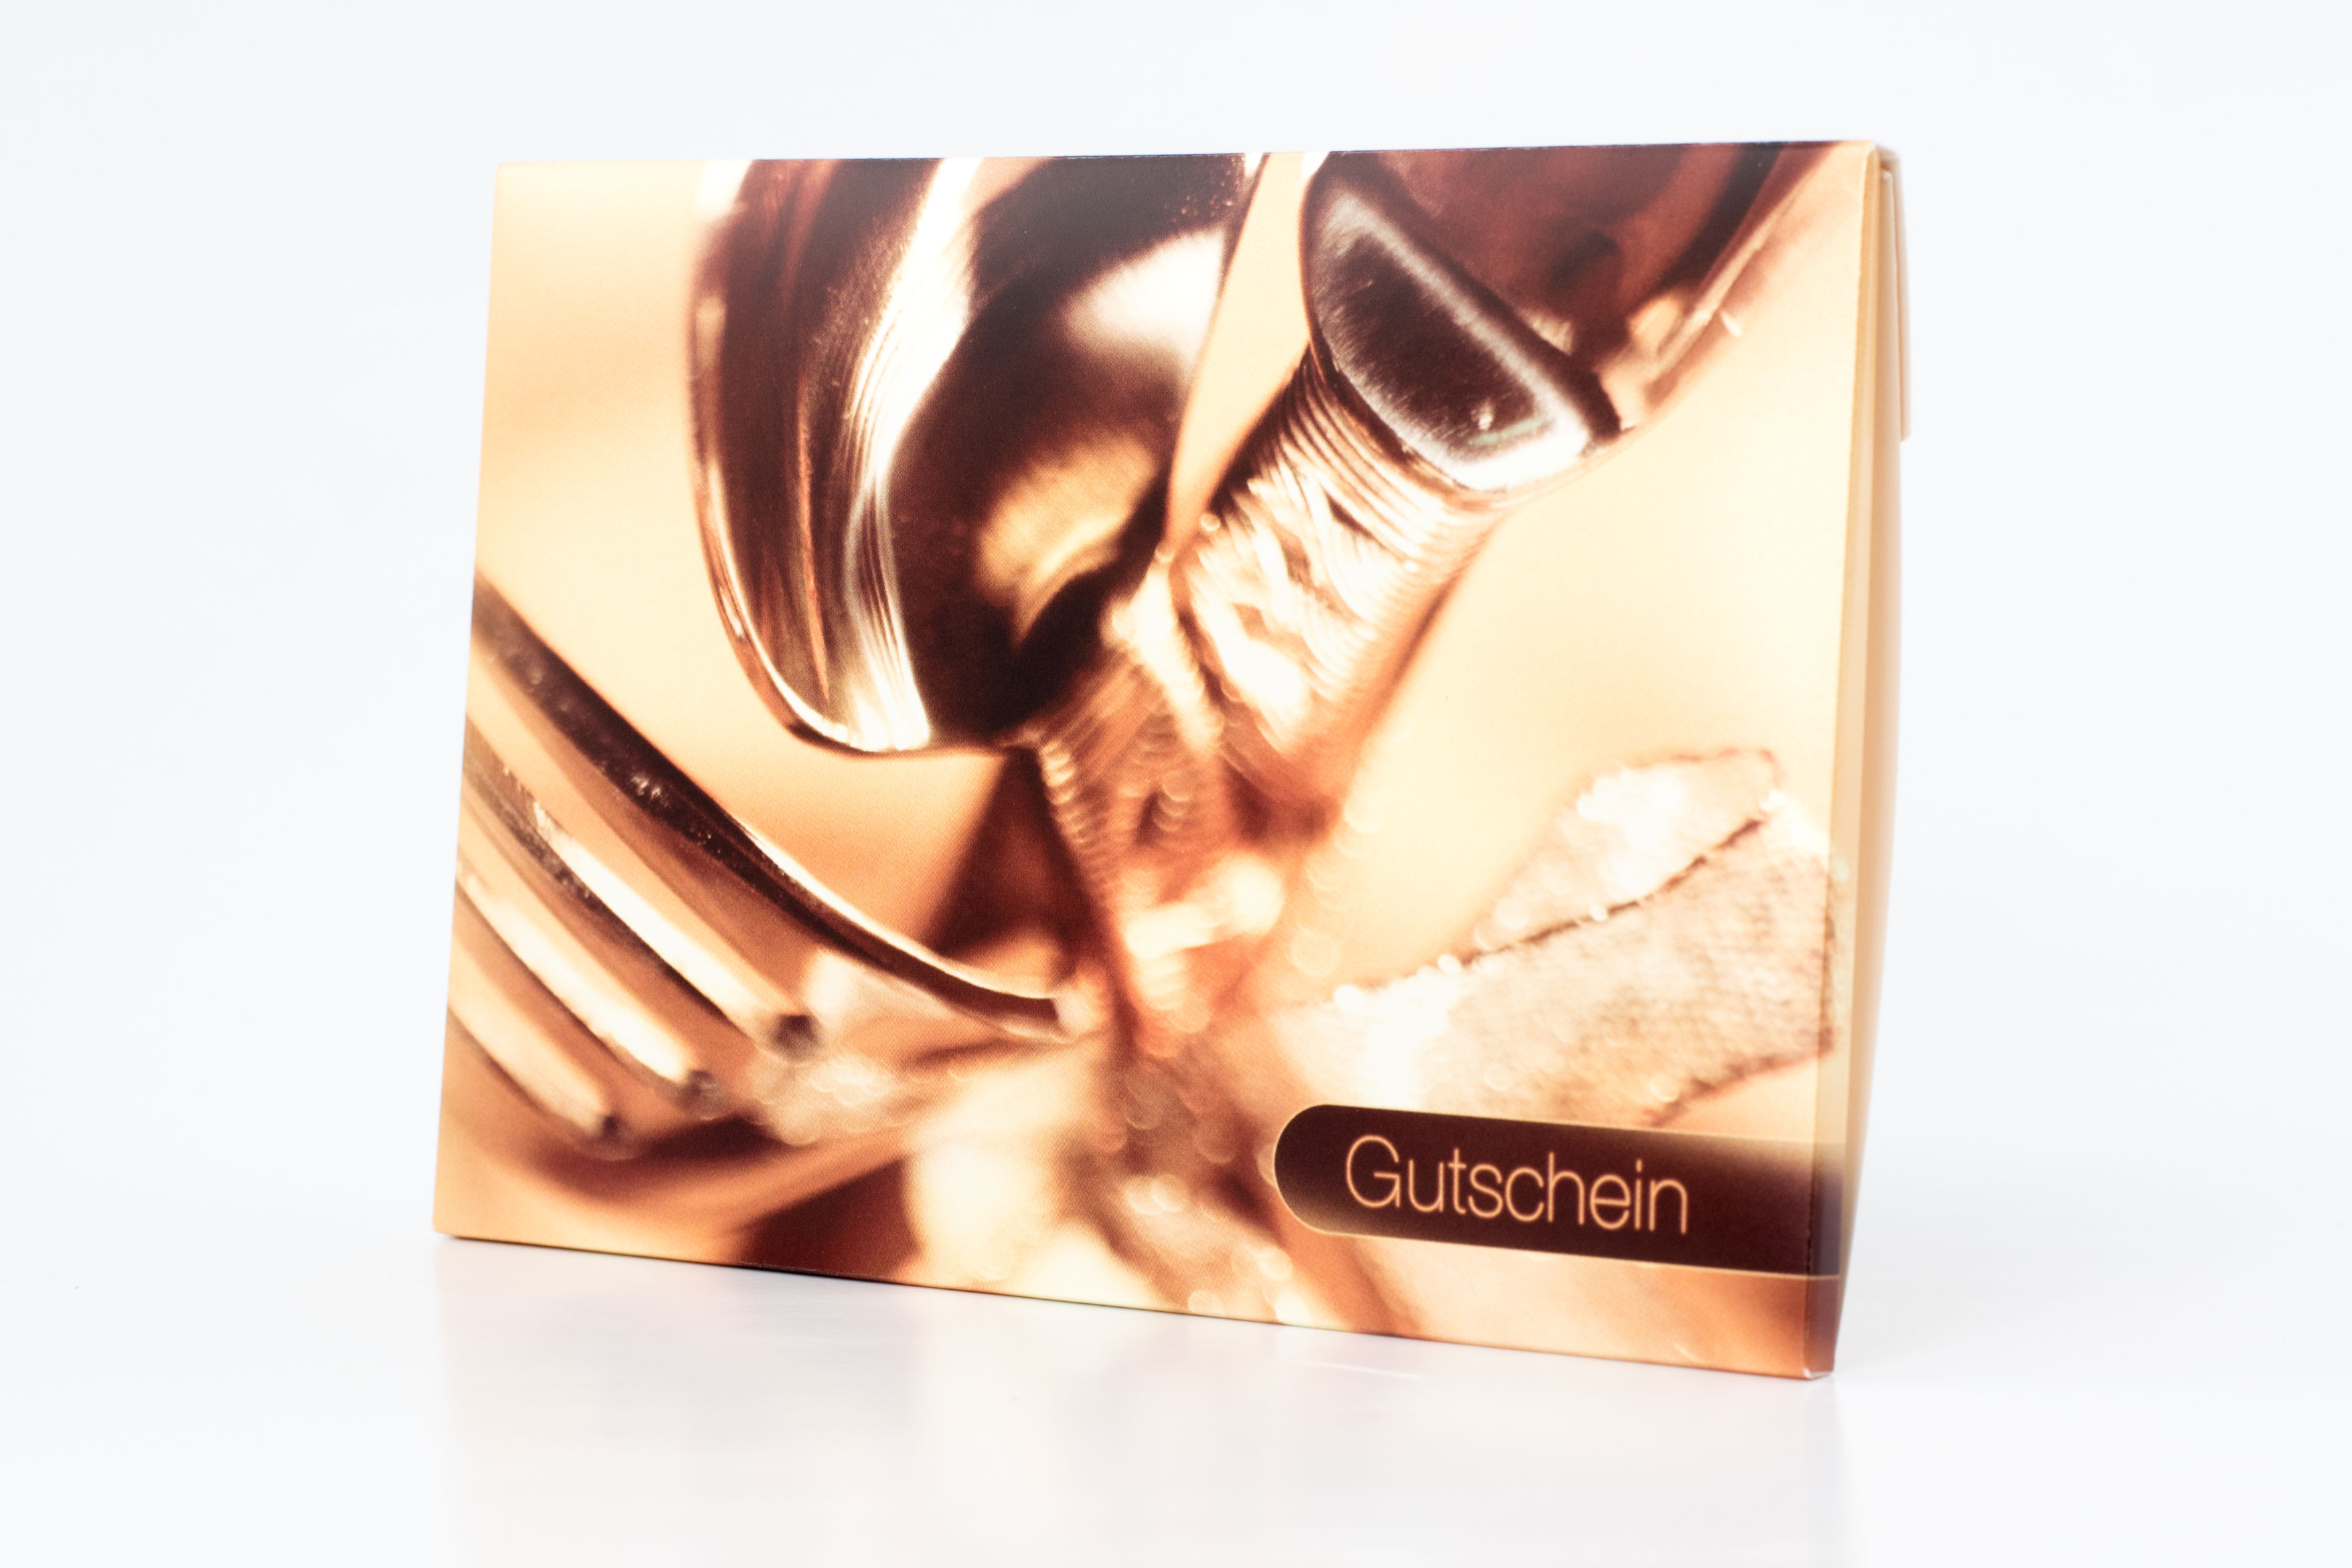 Gutschein-Faltbox "Gastronomie" Gutscheinkarte Geschenkbox Geschenkgutschein Restaurant